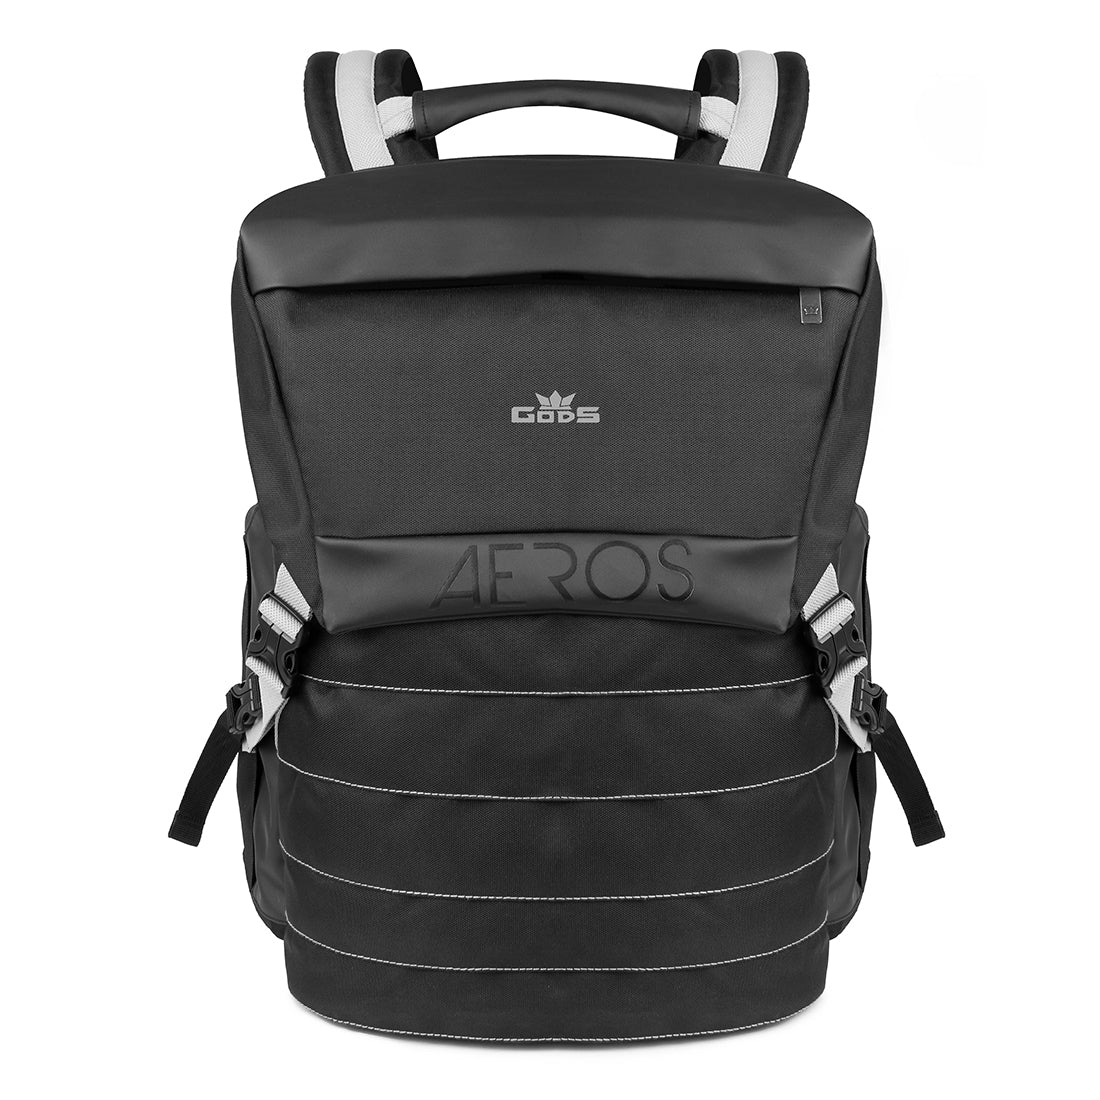 Aeros 35 Backpack